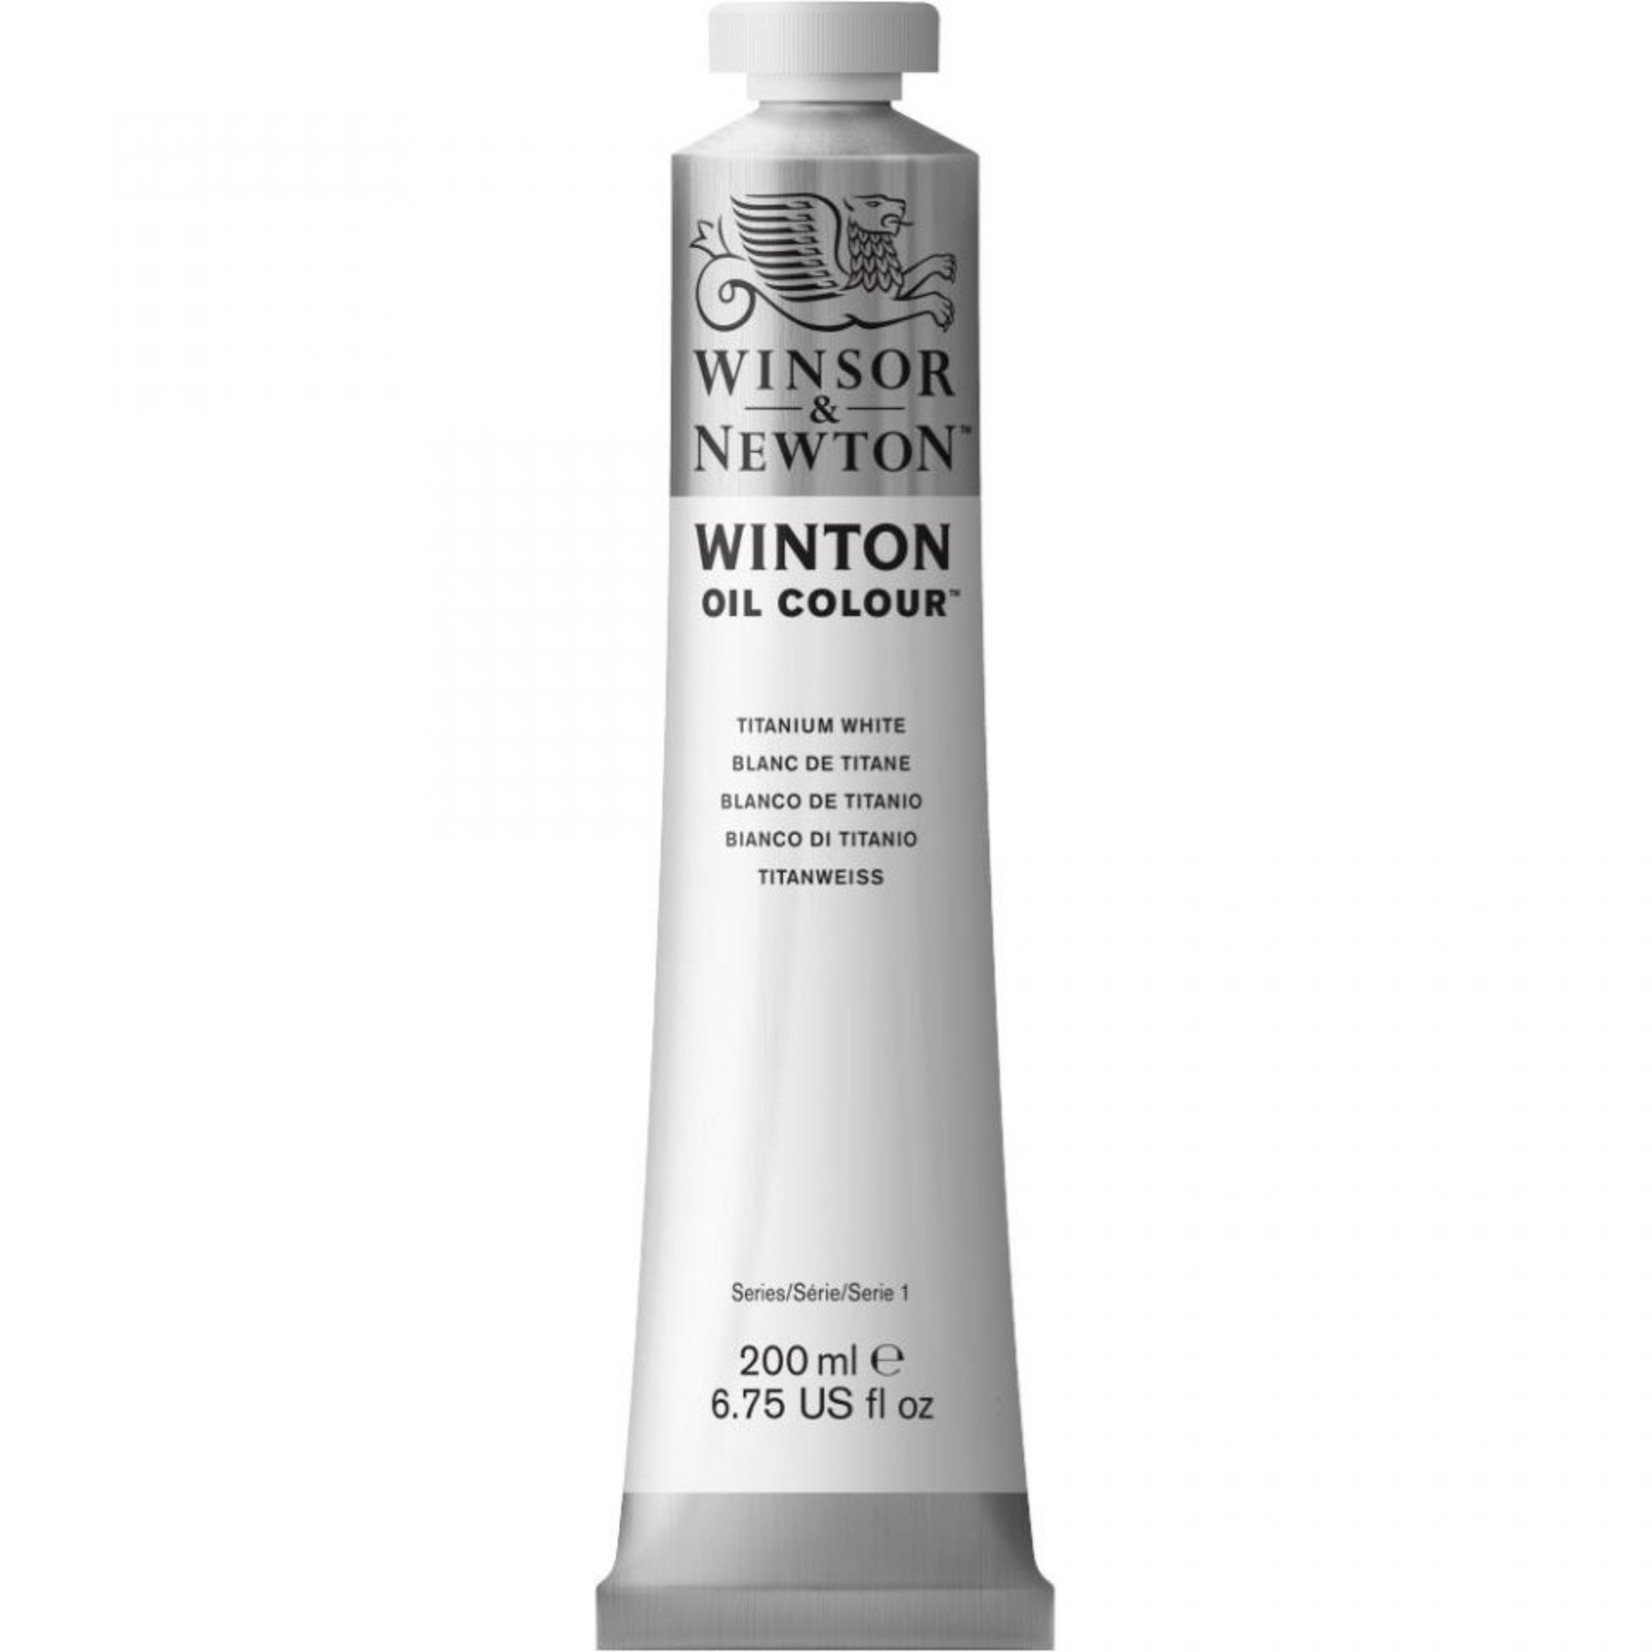 WINSOR & NEWTON WINTON OIL 200ML TITANIUM WHITE